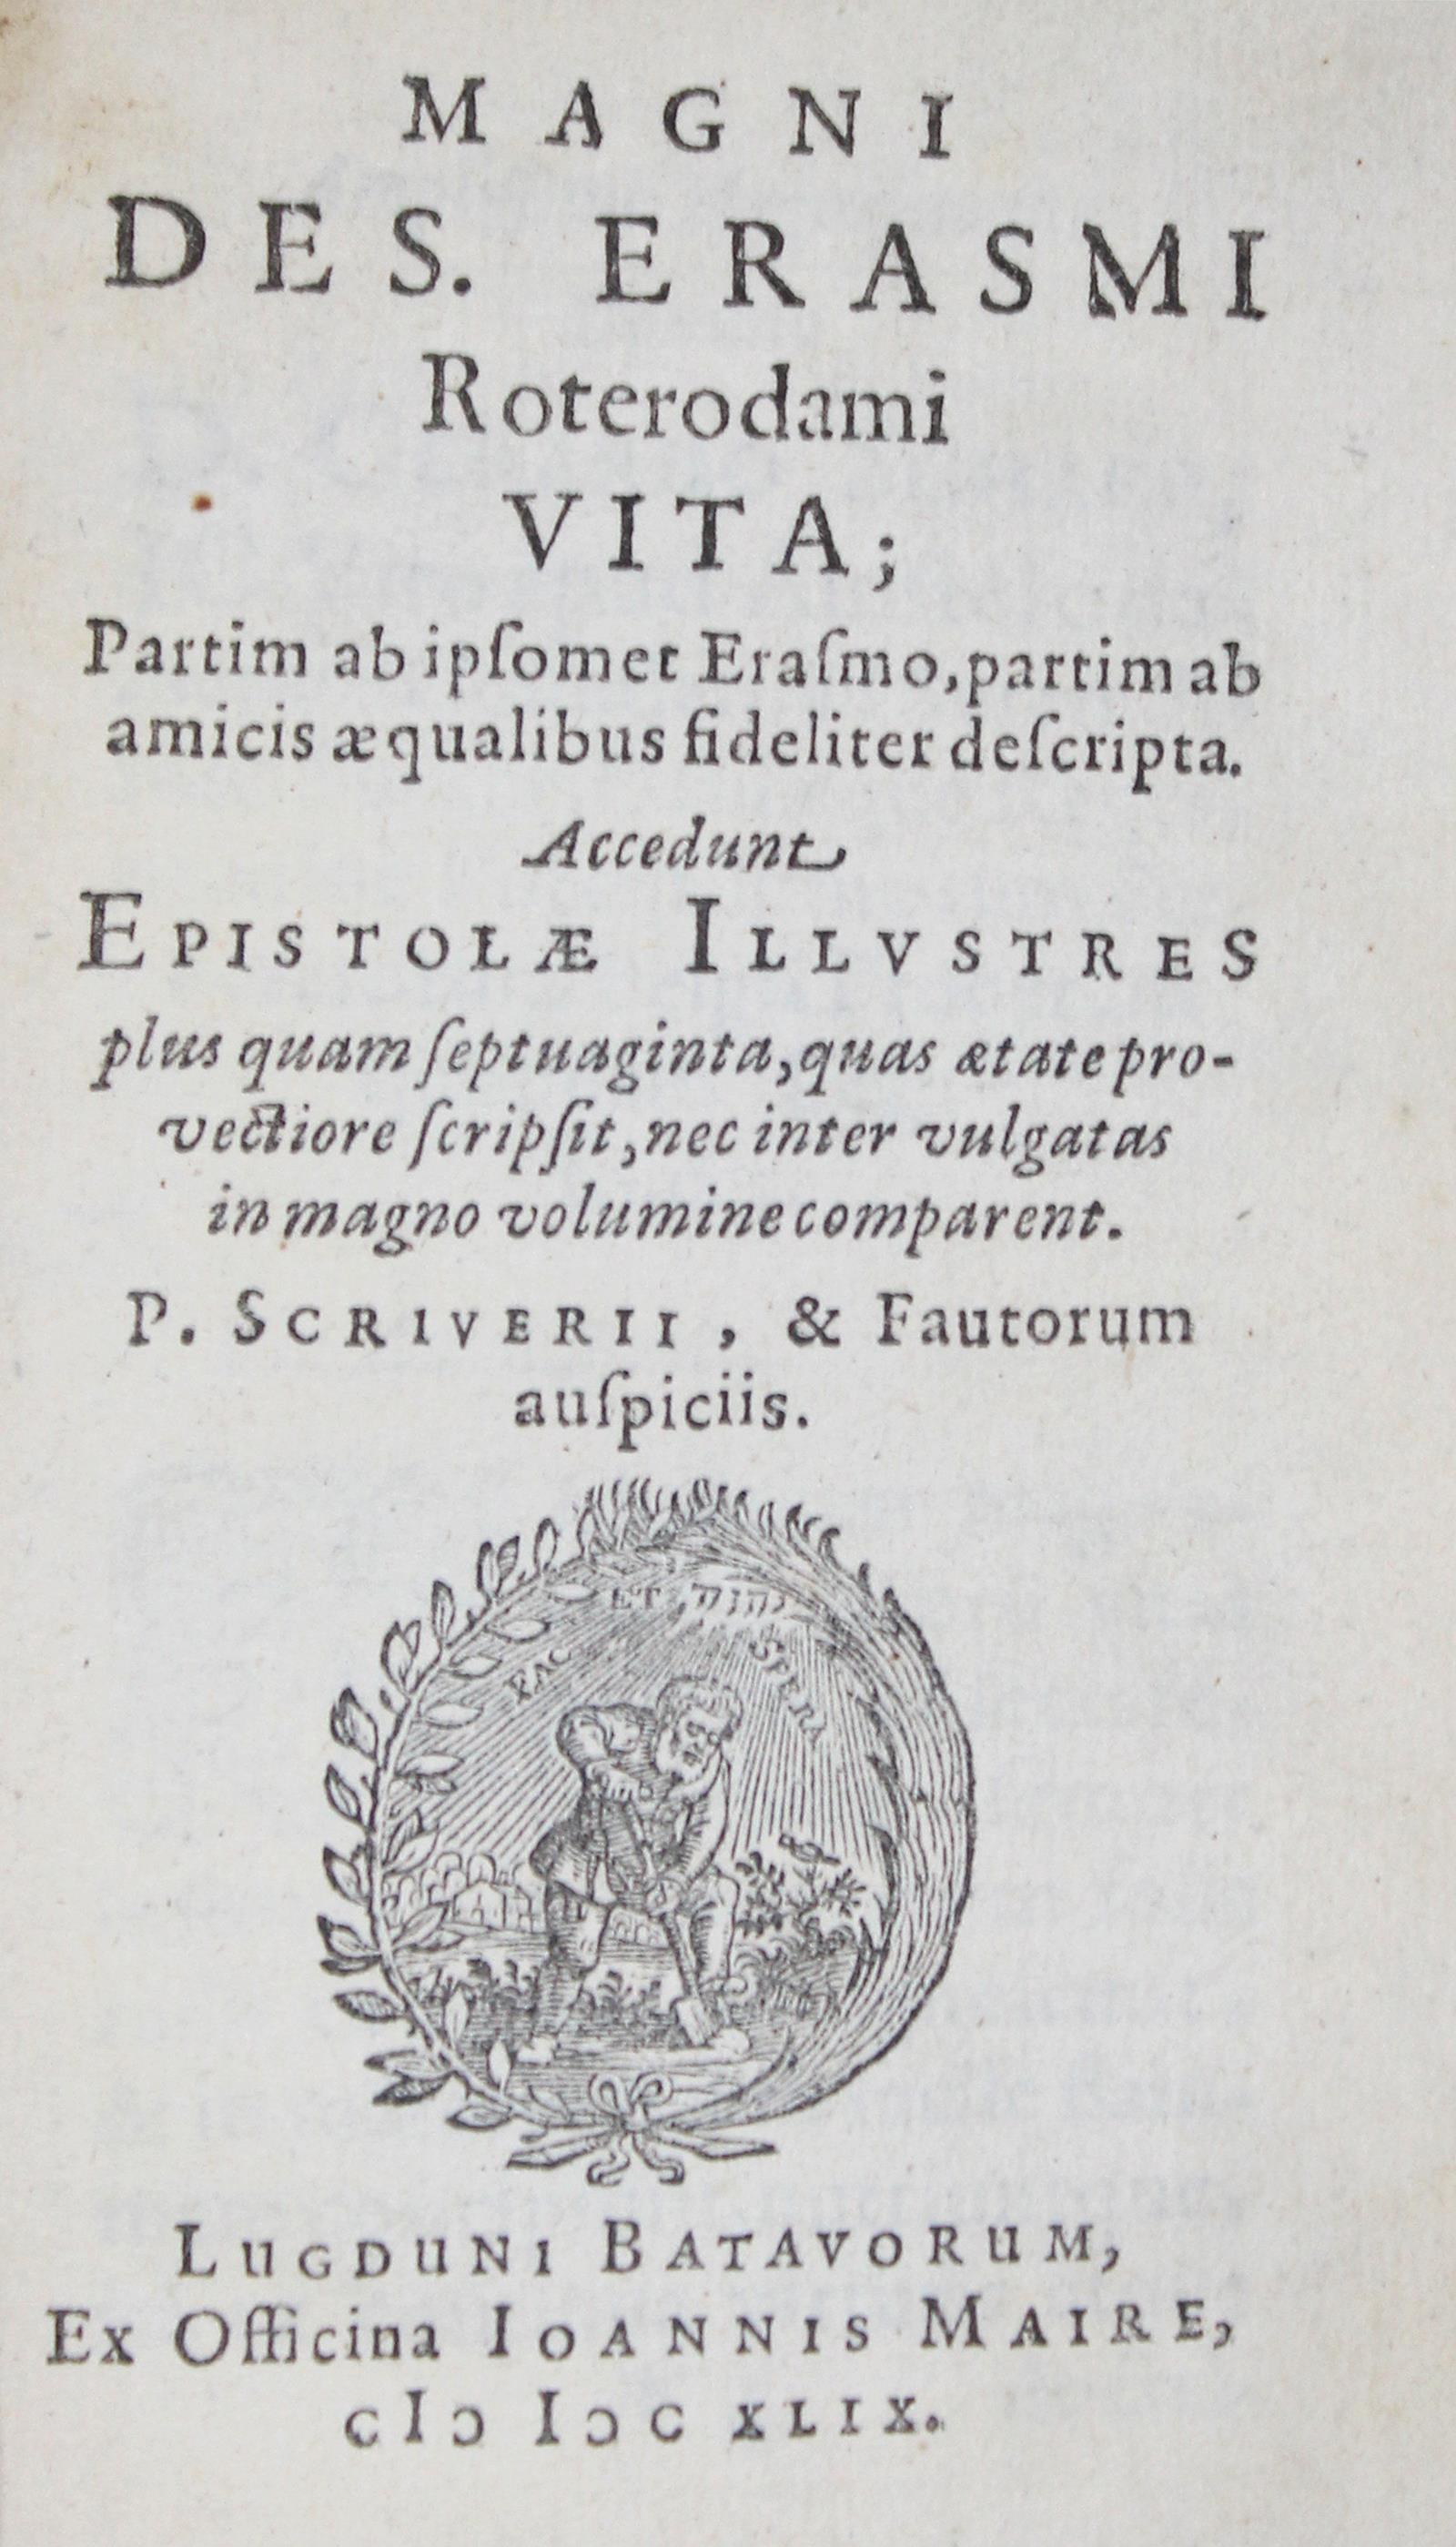 Erasmus von Rotterdam,D.